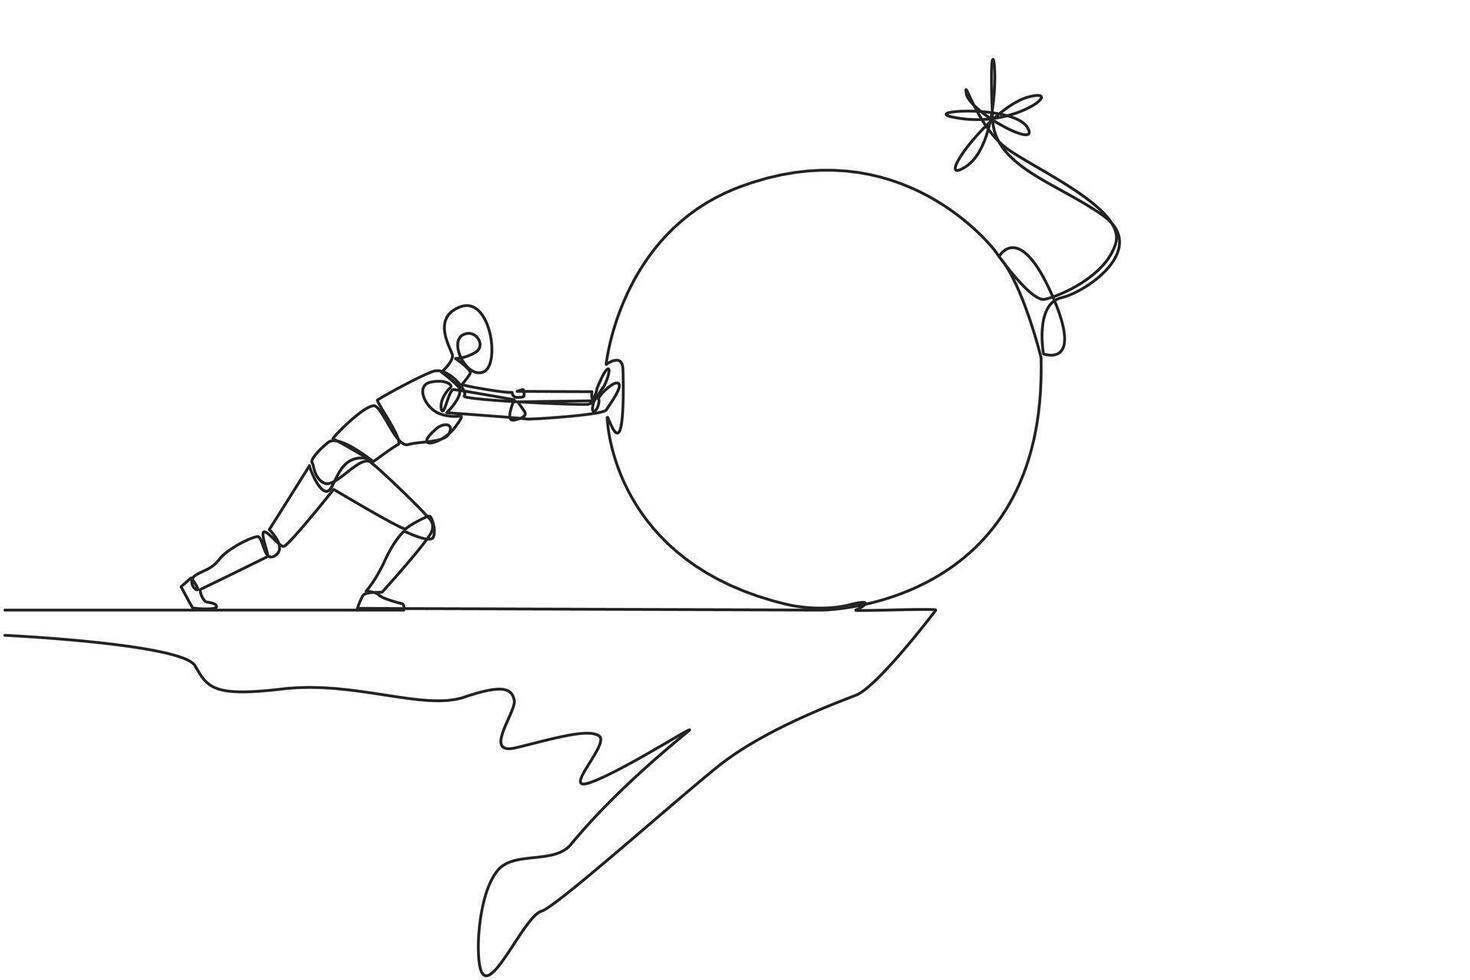 doorlopend een lijn tekening robot duwt groot bom met een brandend lont naar beneden van de rand van klif. concept van houden weg van leed. toekomst tech concept. single lijn trek ontwerp vector illustratie